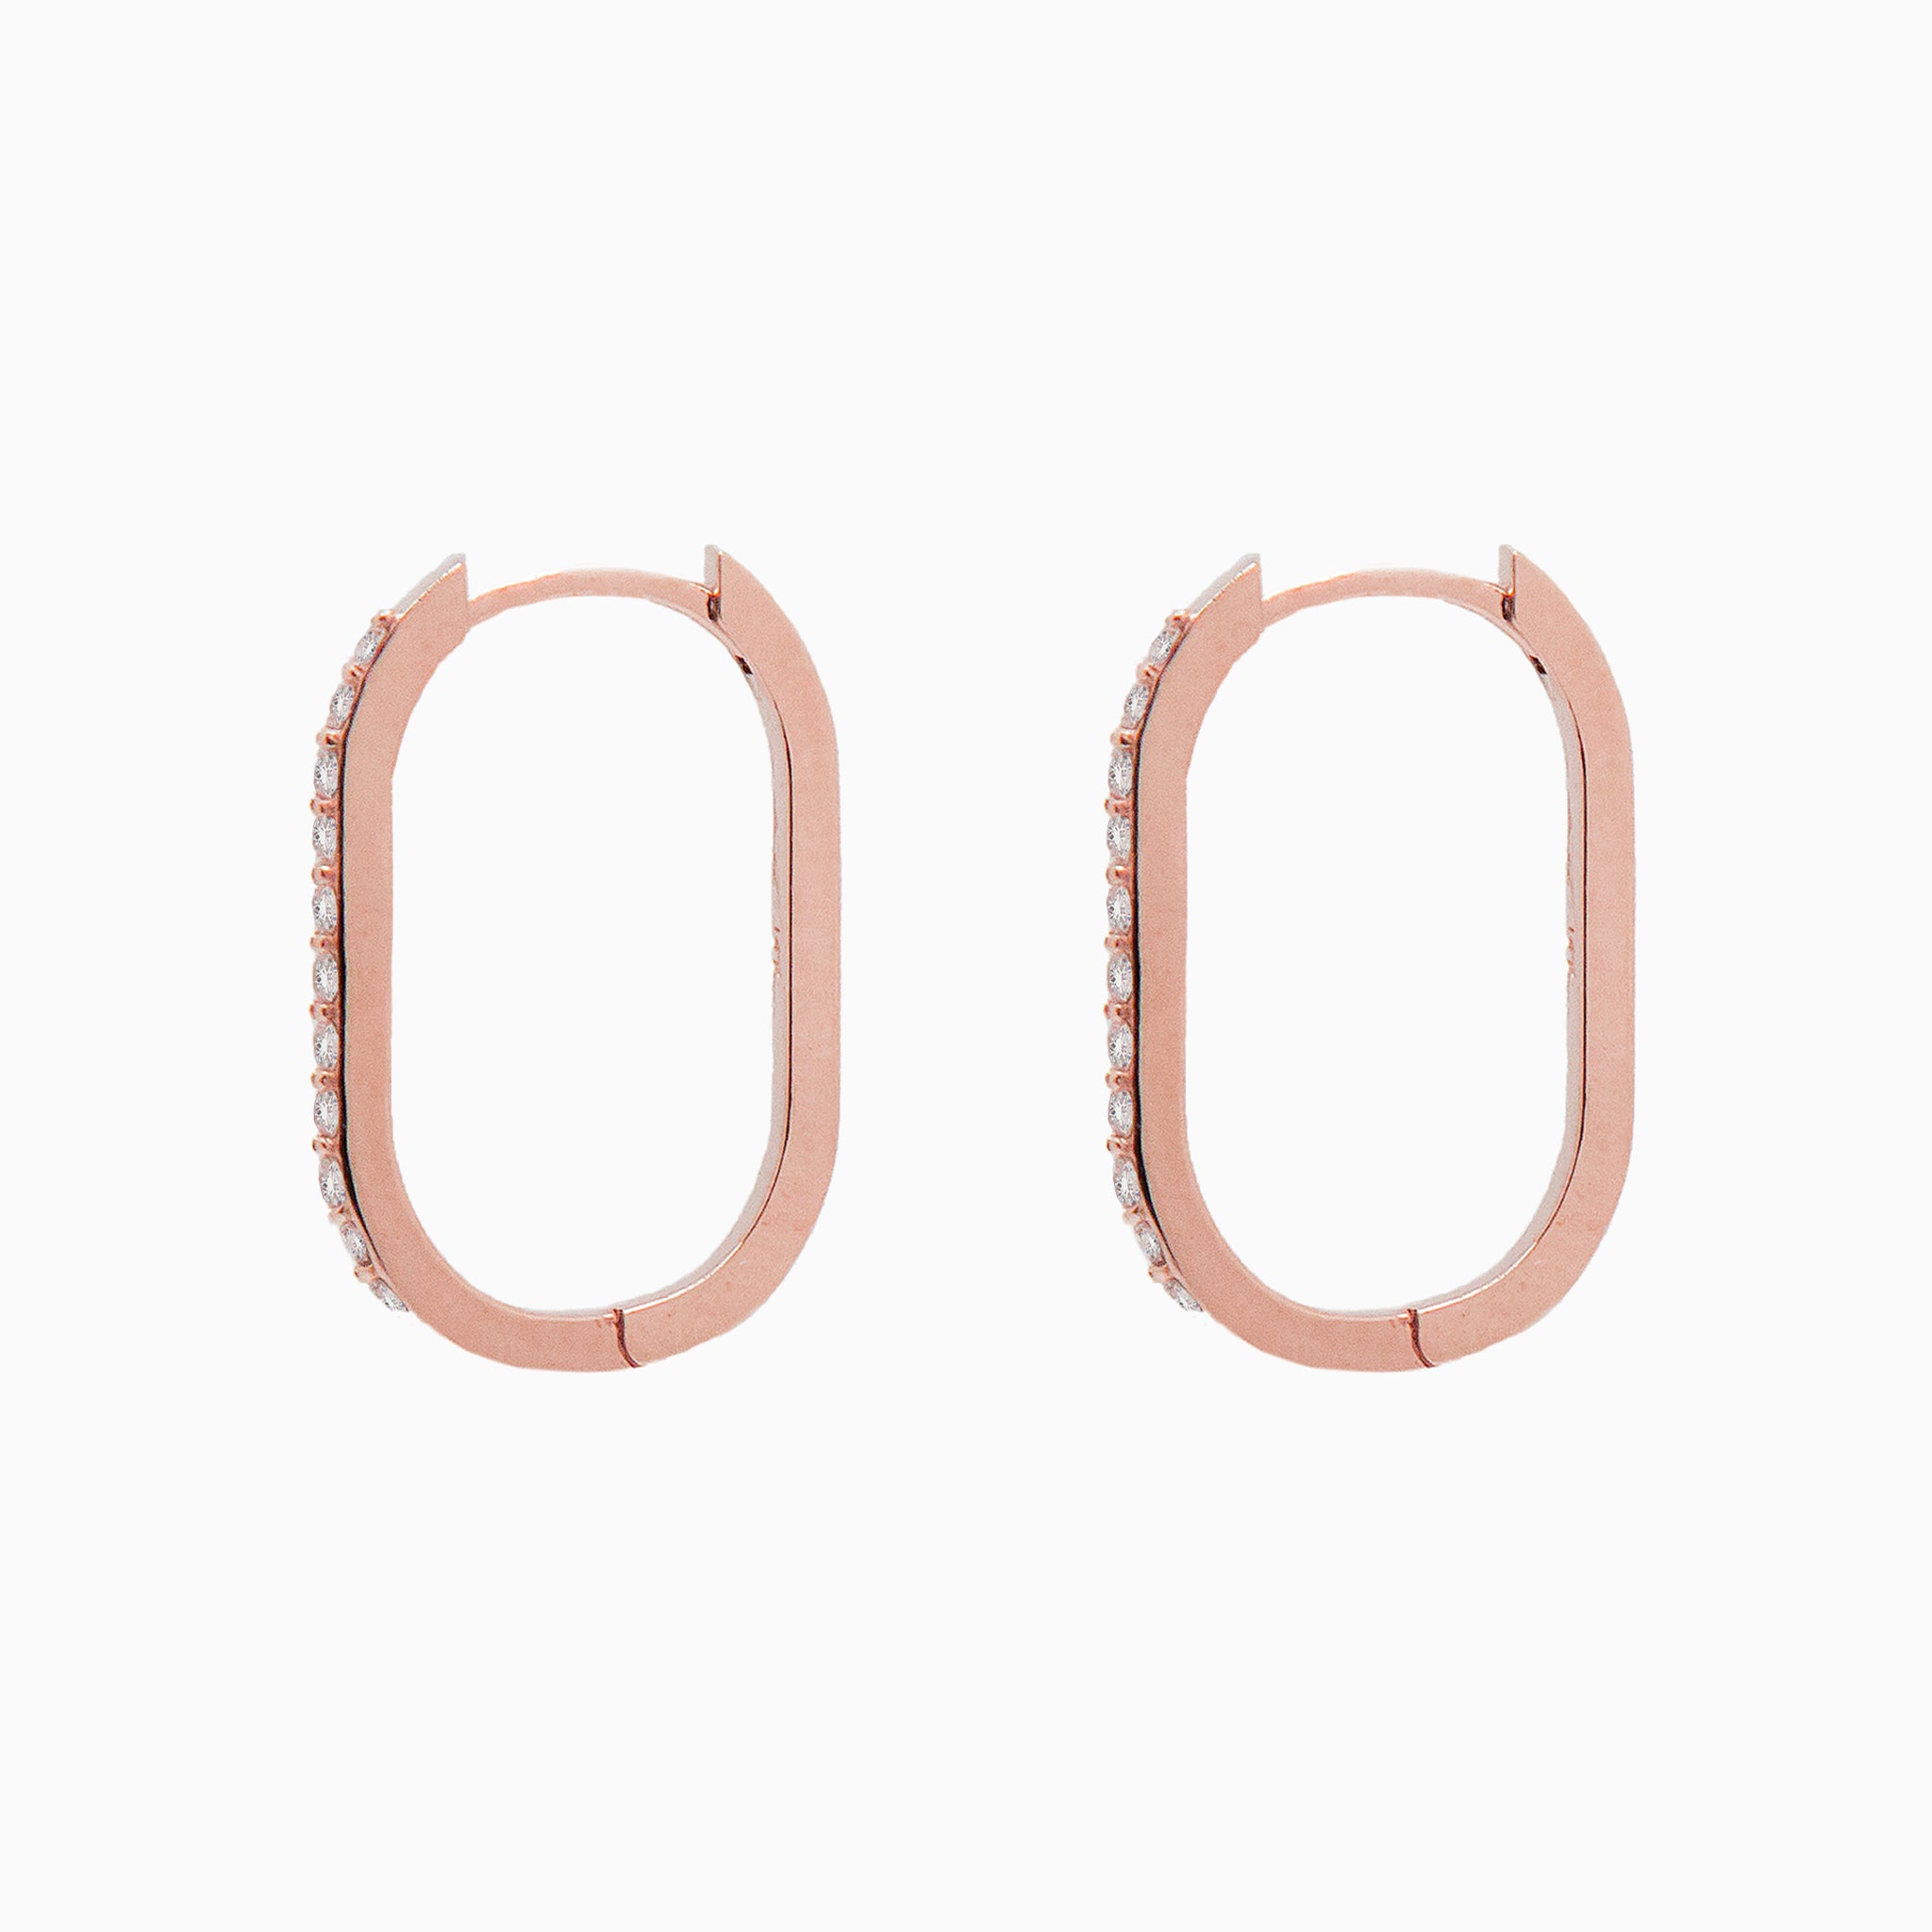 14k Rose Gold 19mm x 13mm Hinged Diamond Paperclip Hoop Earrings, Side View